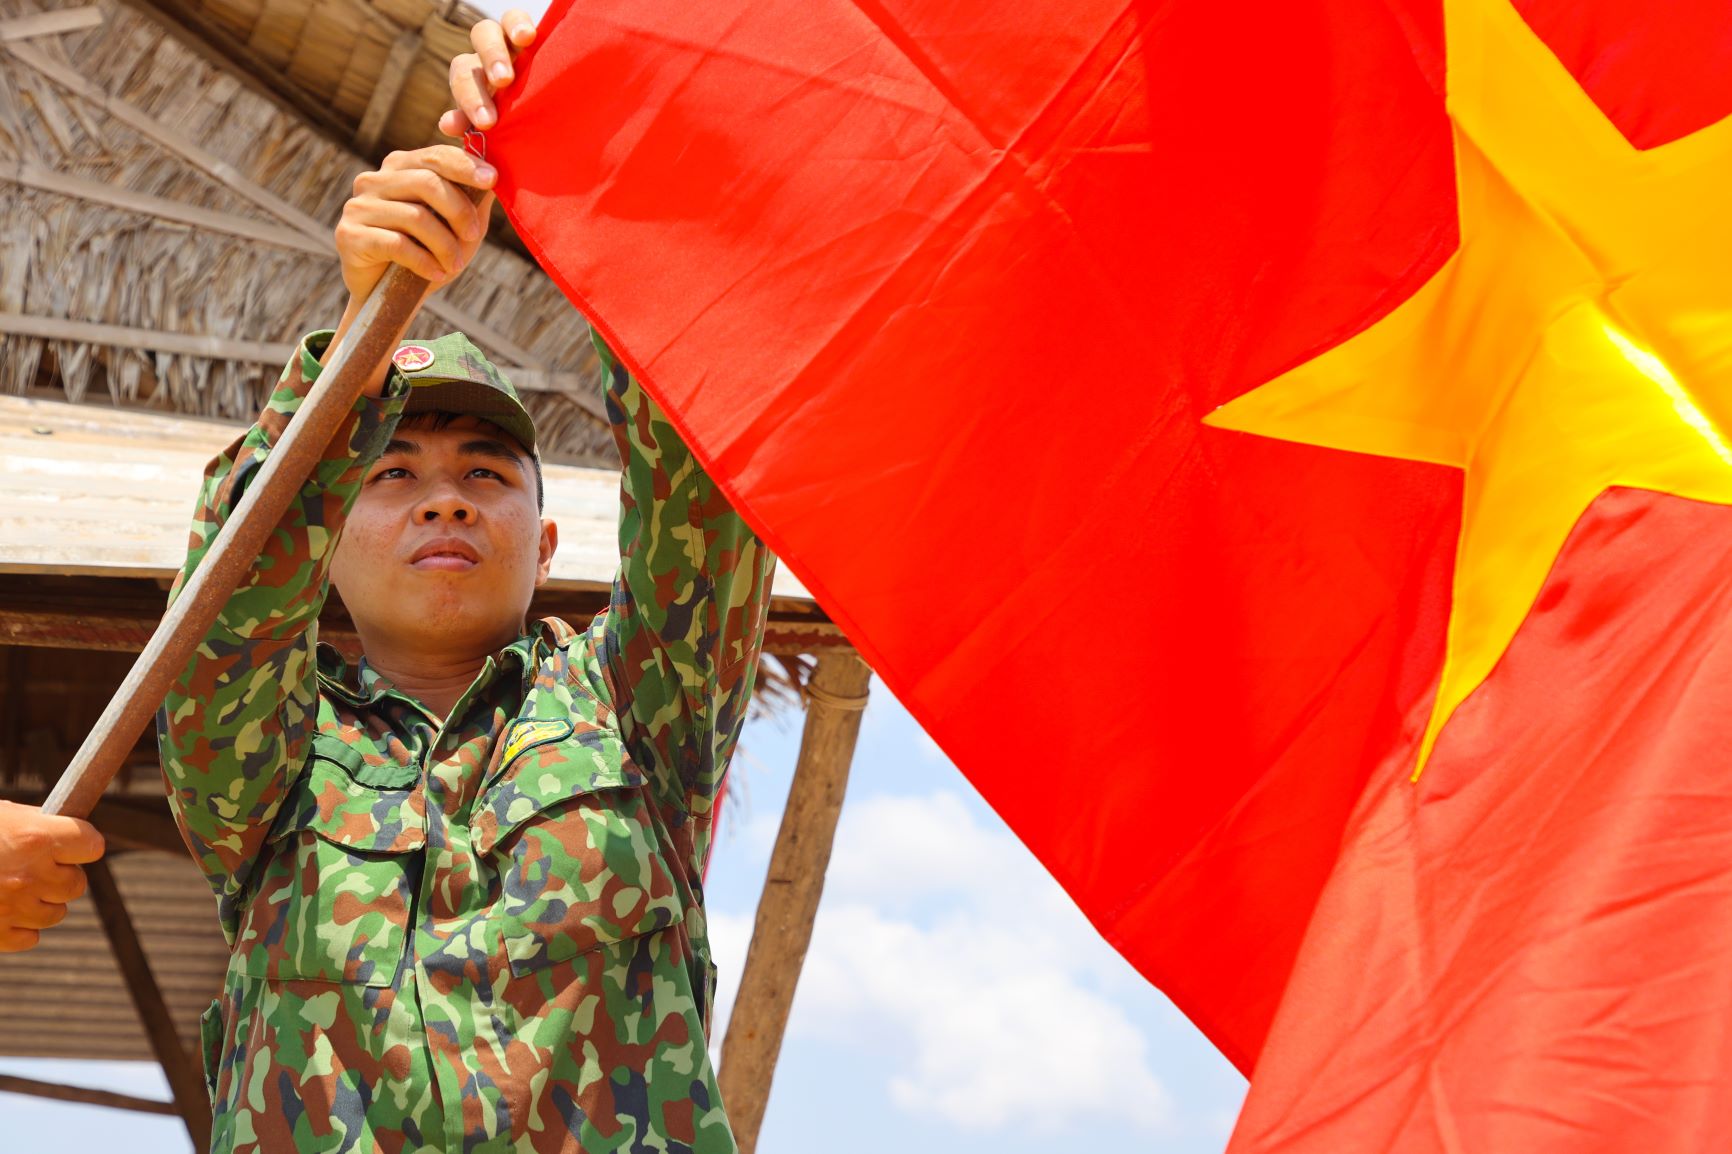 Biên cương: Biên cương Việt Nam hiện đang là một trong những biên giới quốc gia an ninh nhất và ổn định nhất trên thế giới. Quân đội, cảnh sát, nhân dân trên khắp biên giới đều đang hợp sức bảo vệ đất nước không ngừng. Chào đón bạn đến xem hình ảnh về những chiến sĩ trên biên giới Việt Nam.